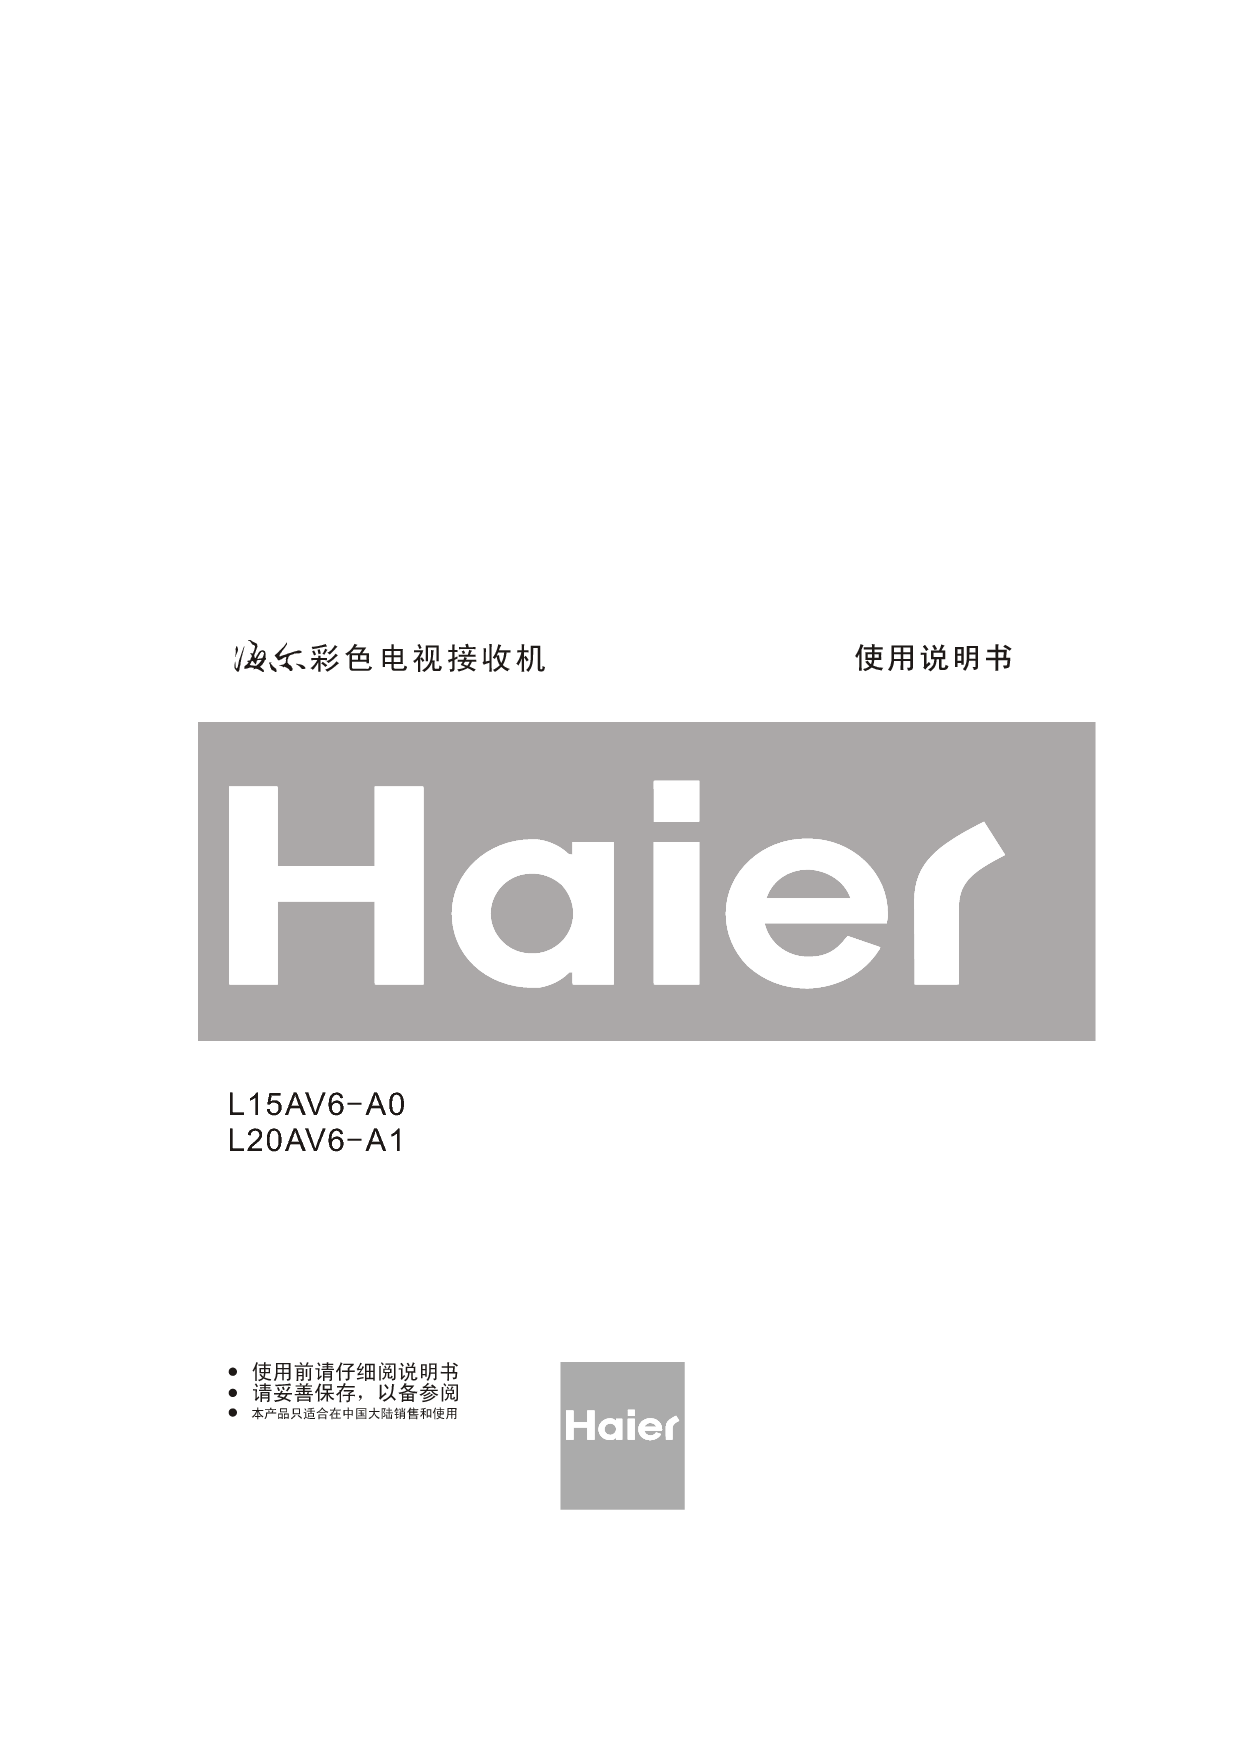 海尔 Haier L15AV6-A0 使用手册 封面